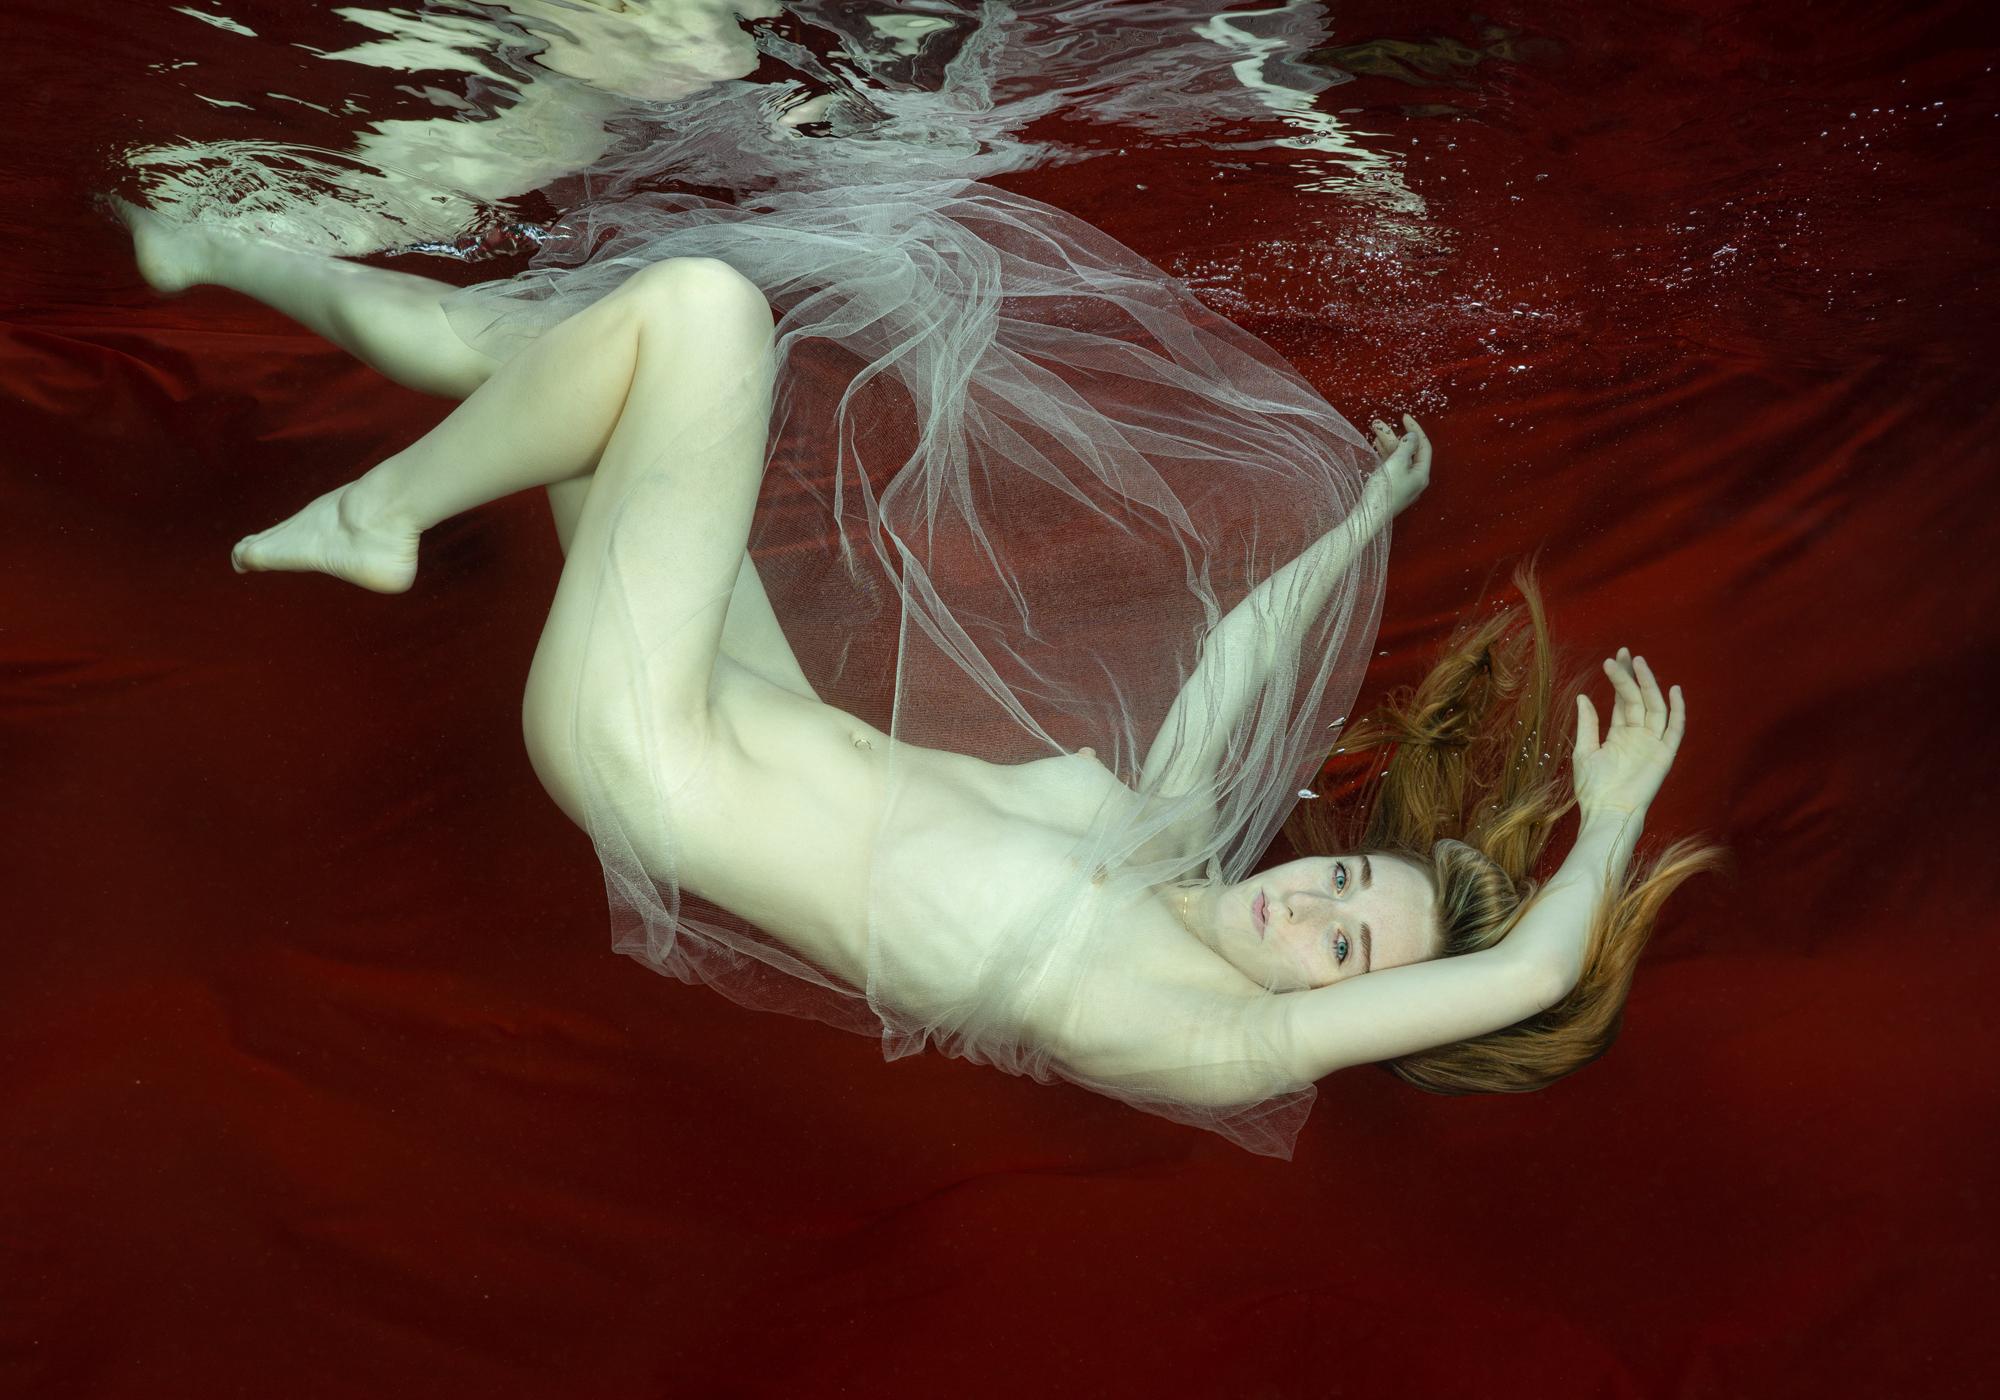 Alex Sher Nude Photograph – Unterwasser-Nacktfotografie – Archivalischer Pigmentdruck von Loreley